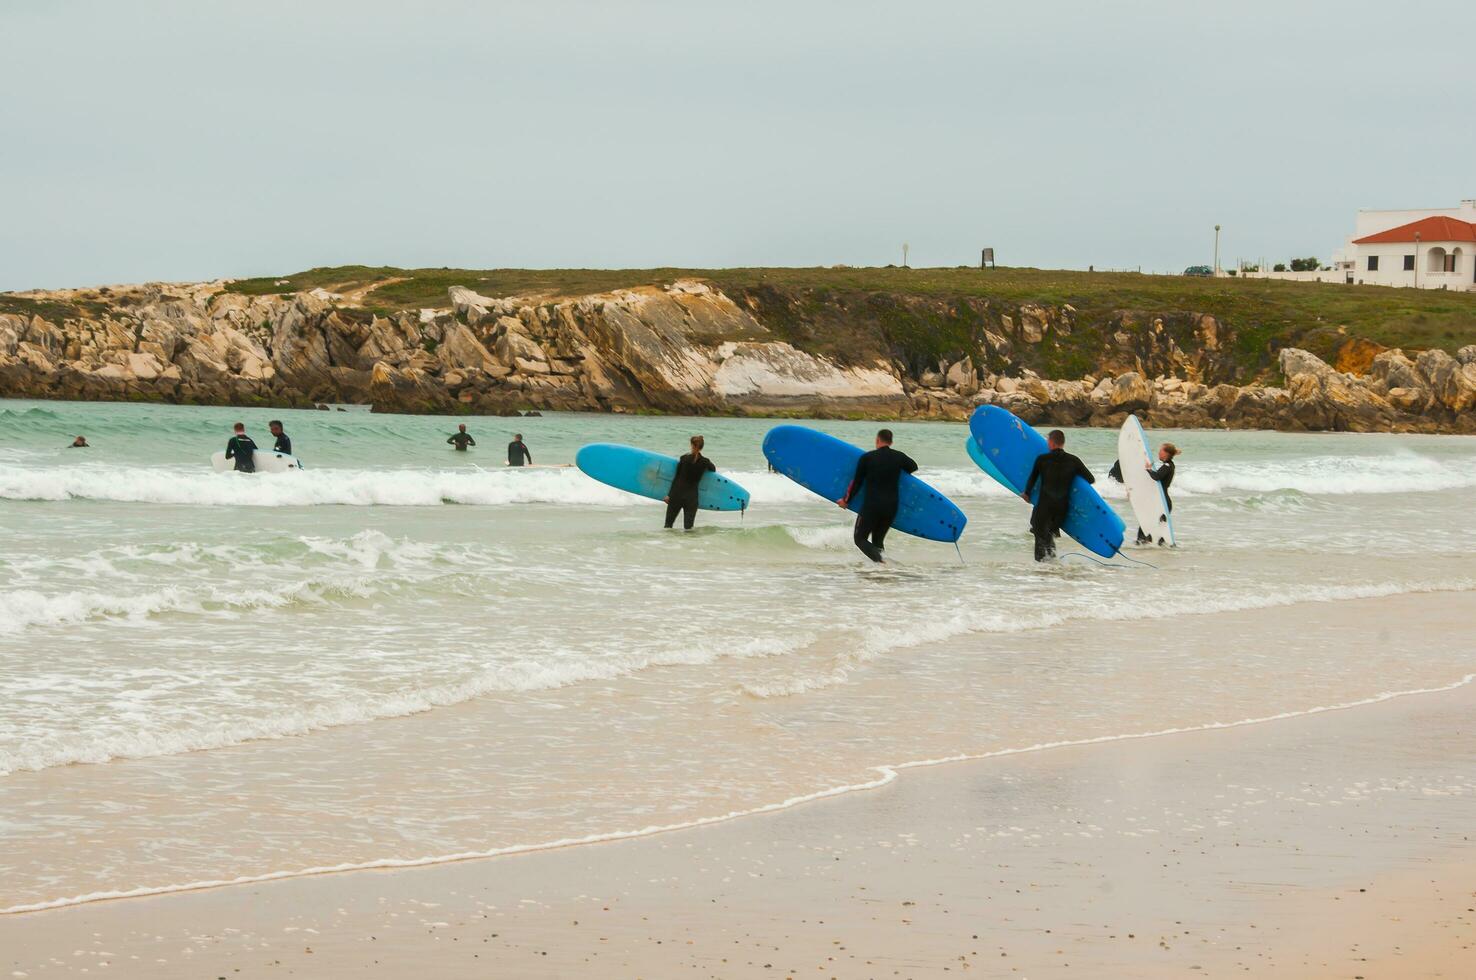 surfa skolor i baleal ö, portugal foto